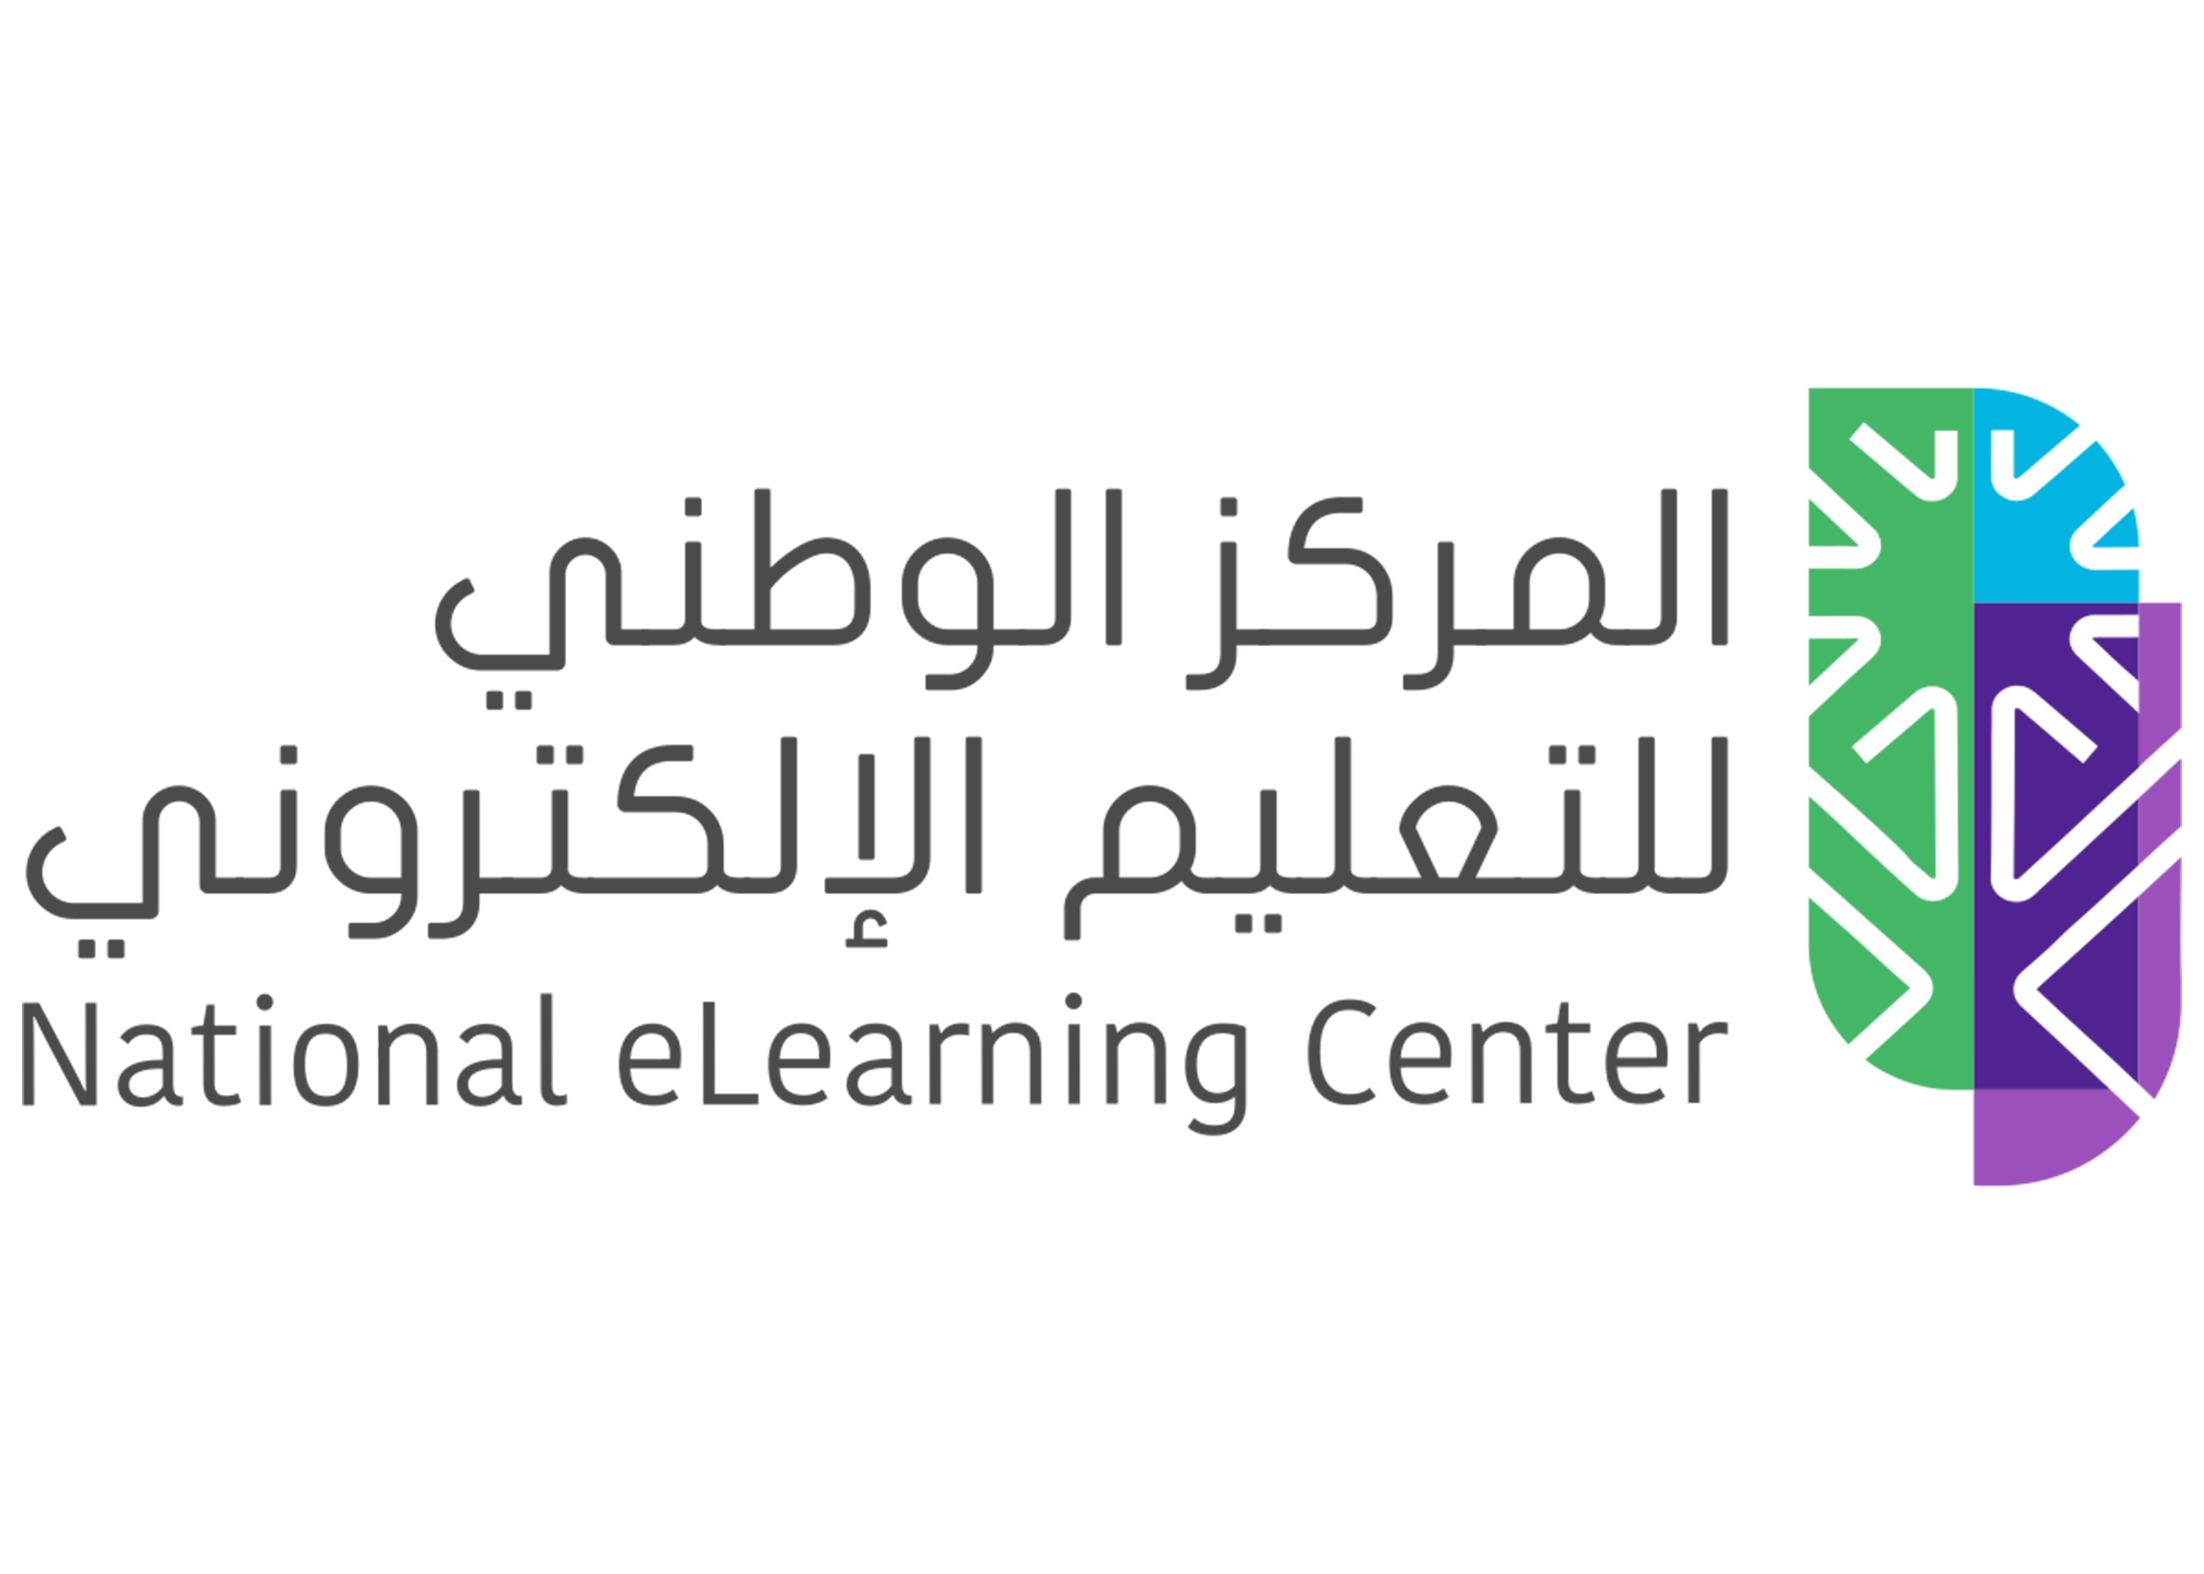 المركز الوطني للتعليم الالكتروني